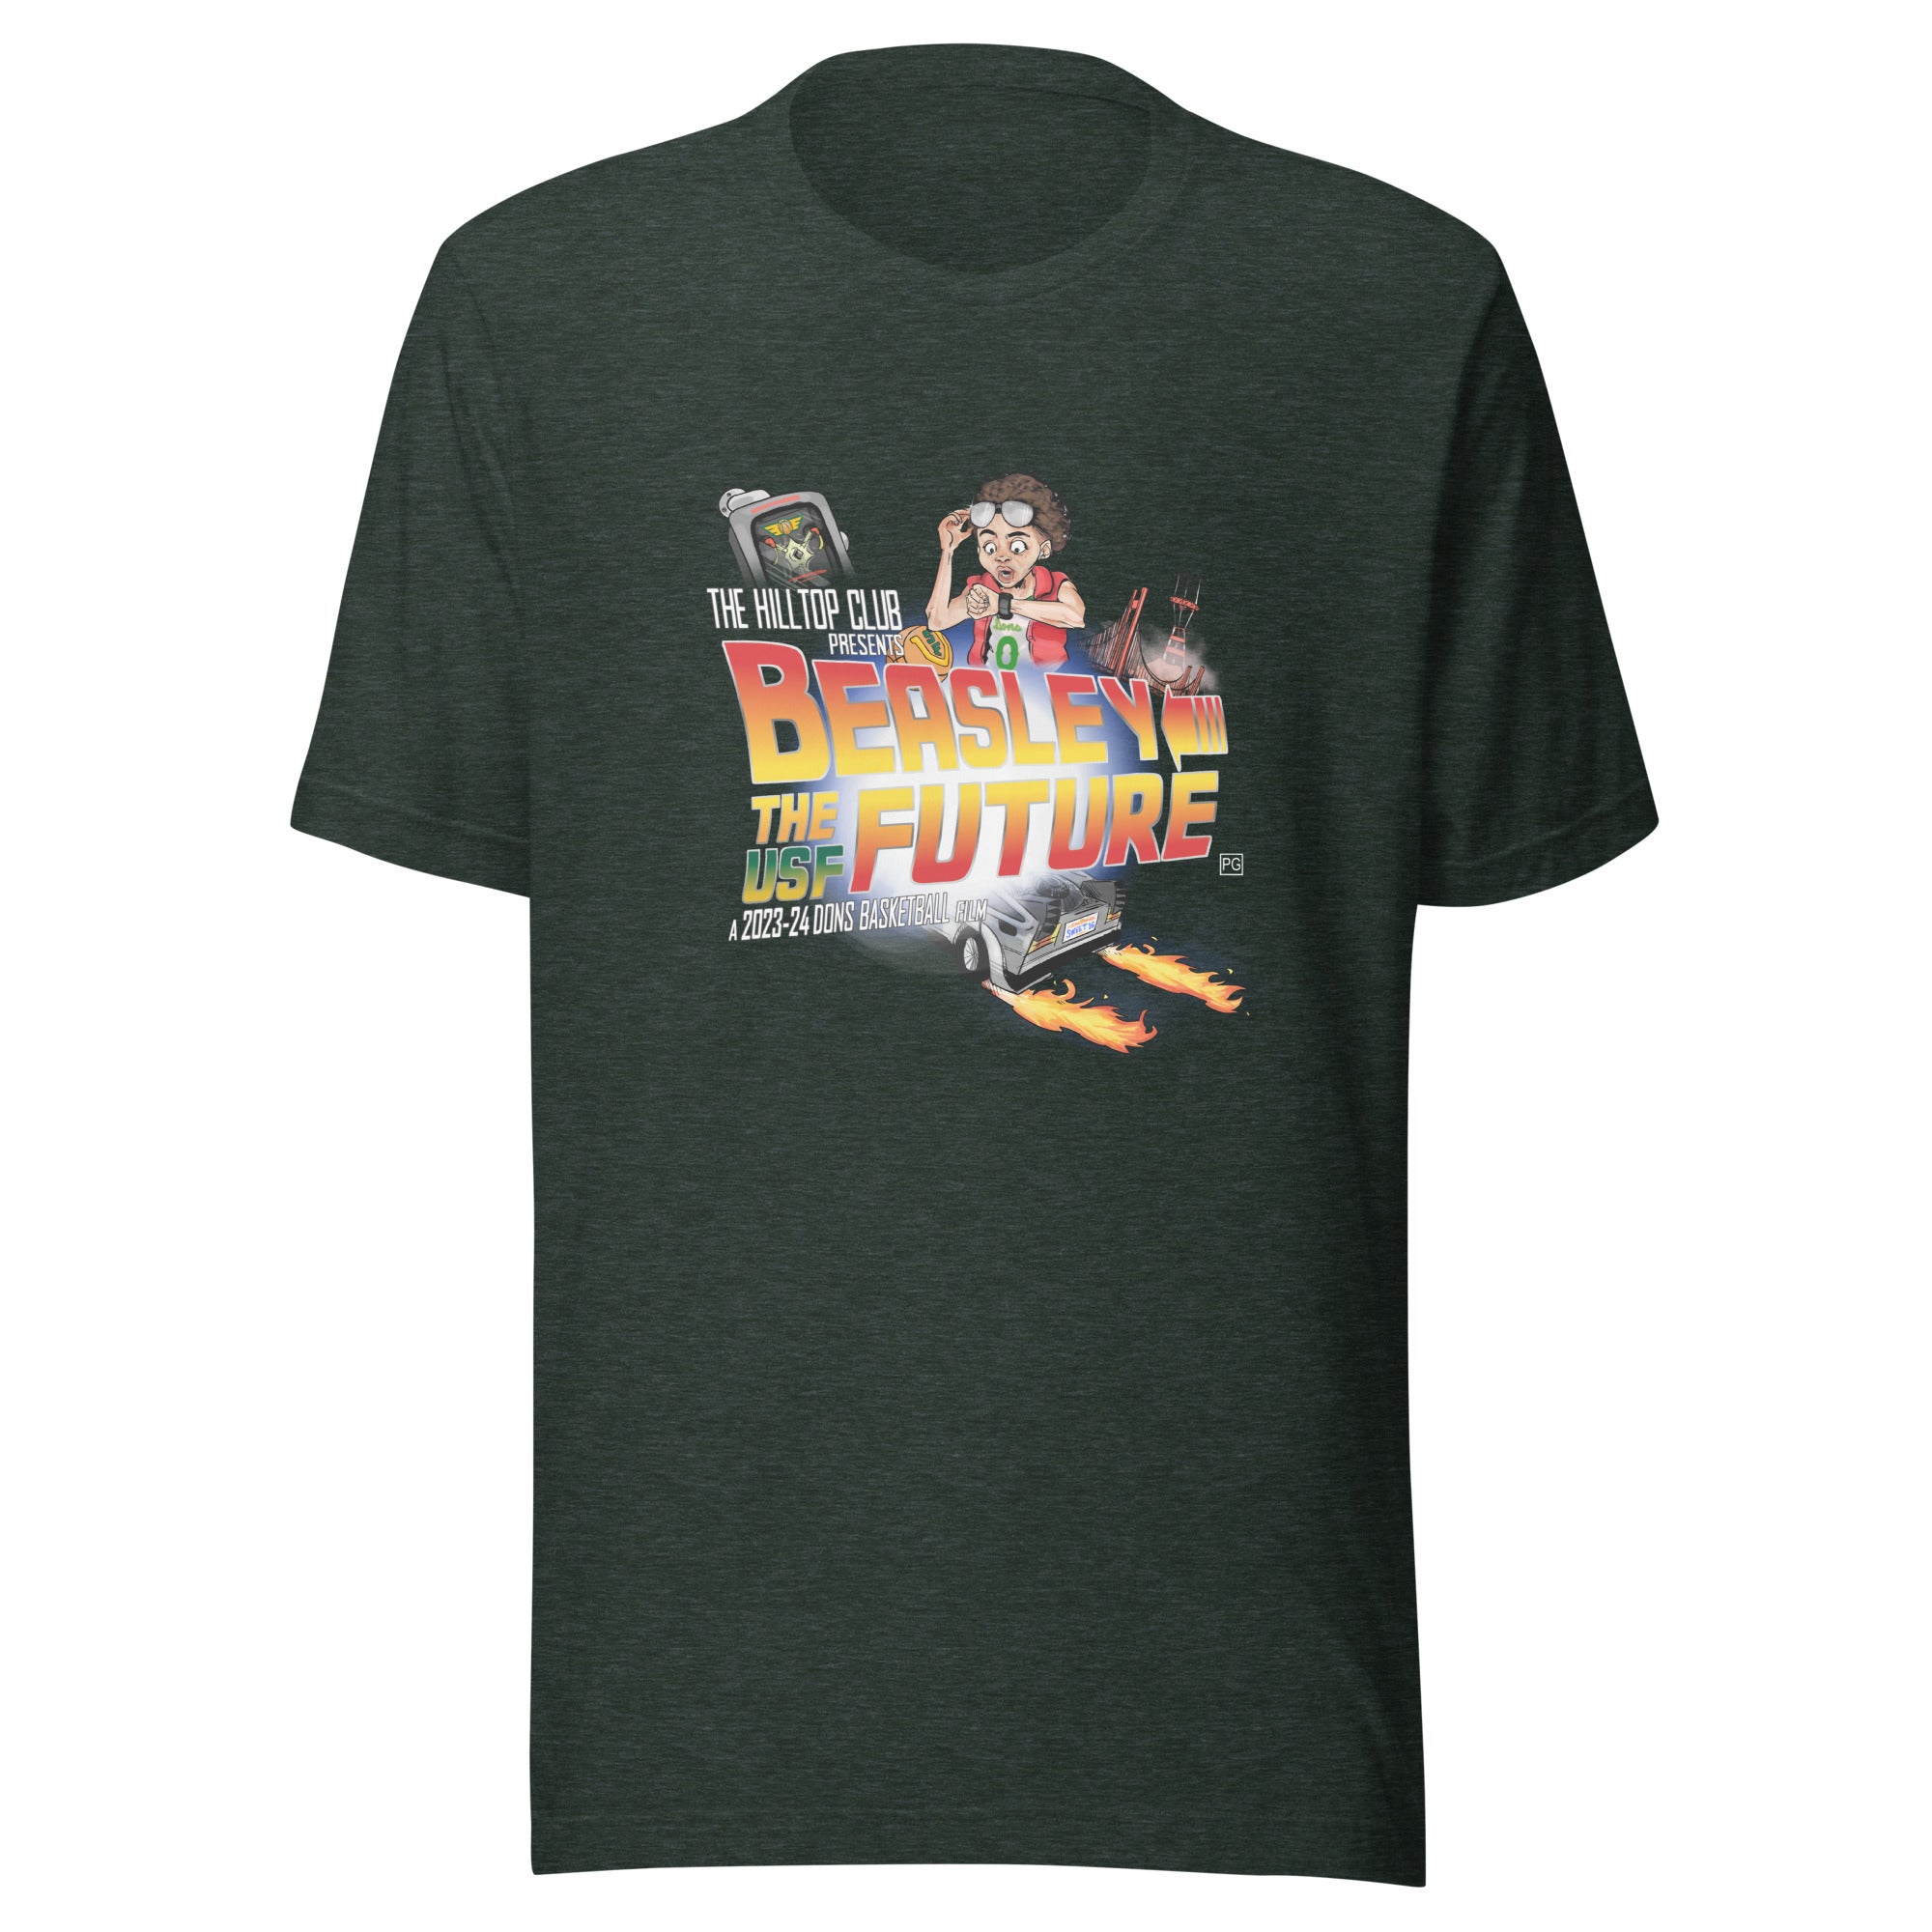 Ryan Beasley "Future" Unisex t-shirt